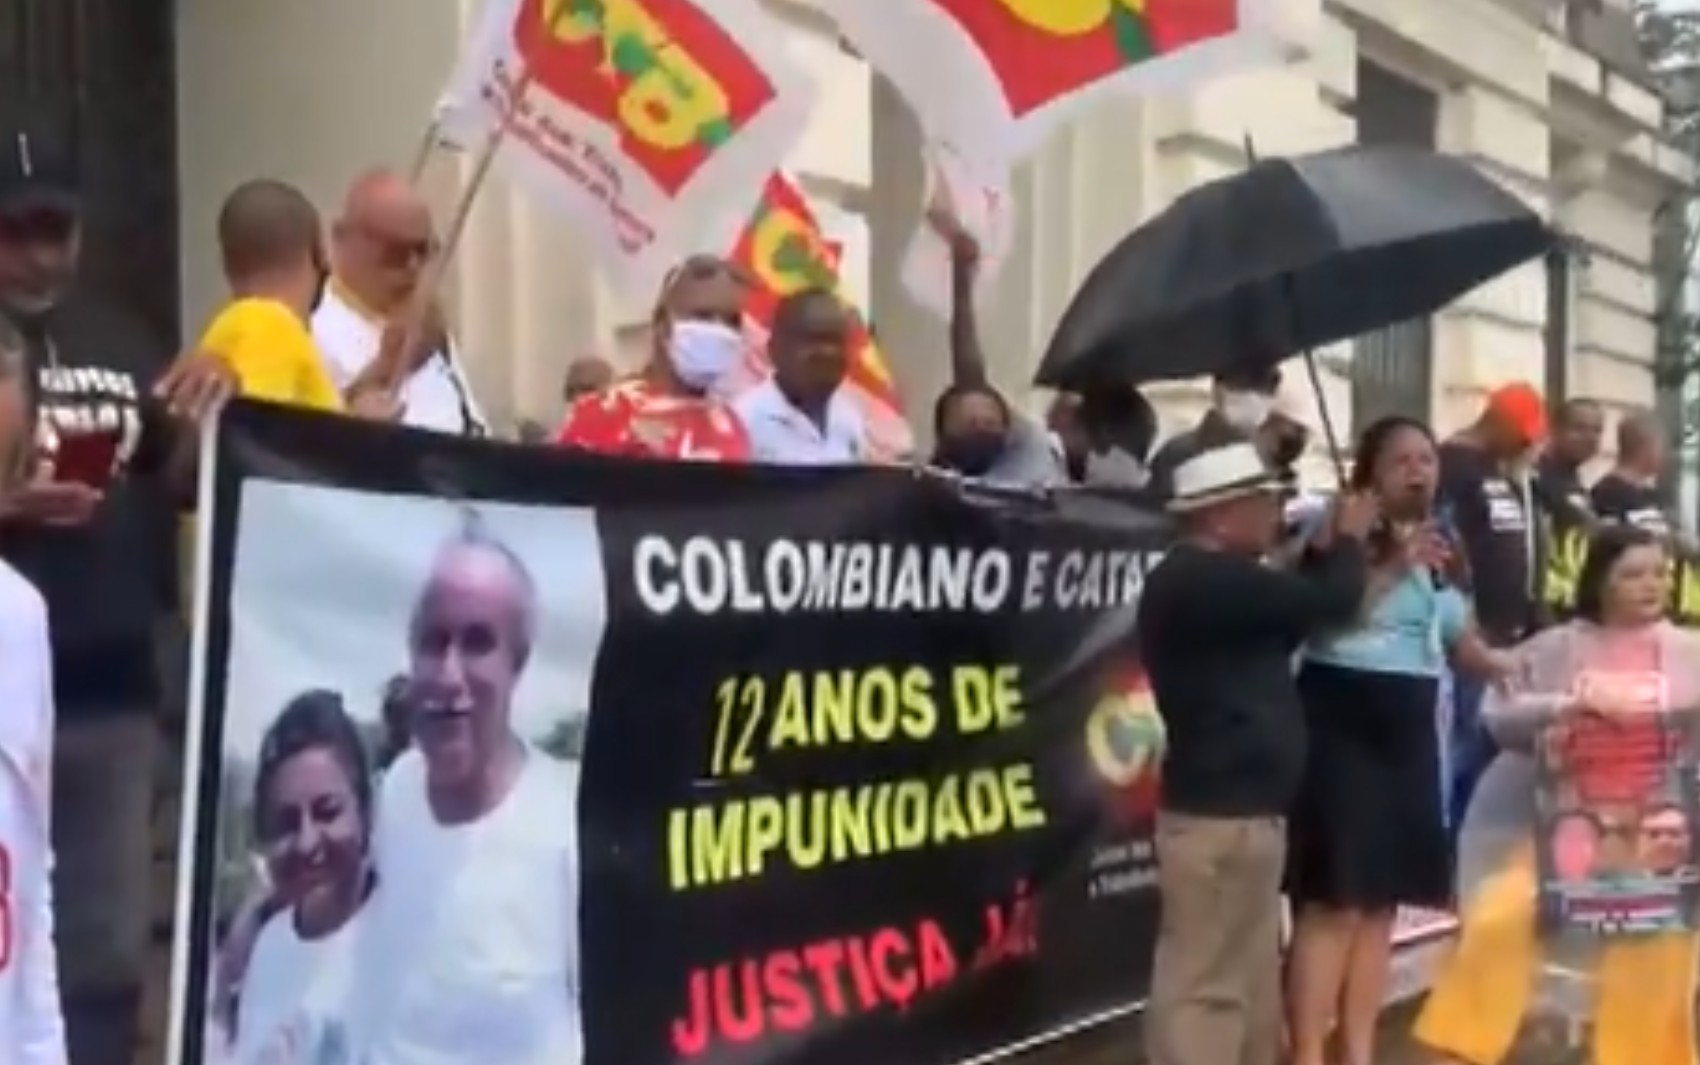 Amigos relembram 12 anos da morte de sindicalista Paulo Colombiano e sua esposa; suspeitos aguardam julgamento